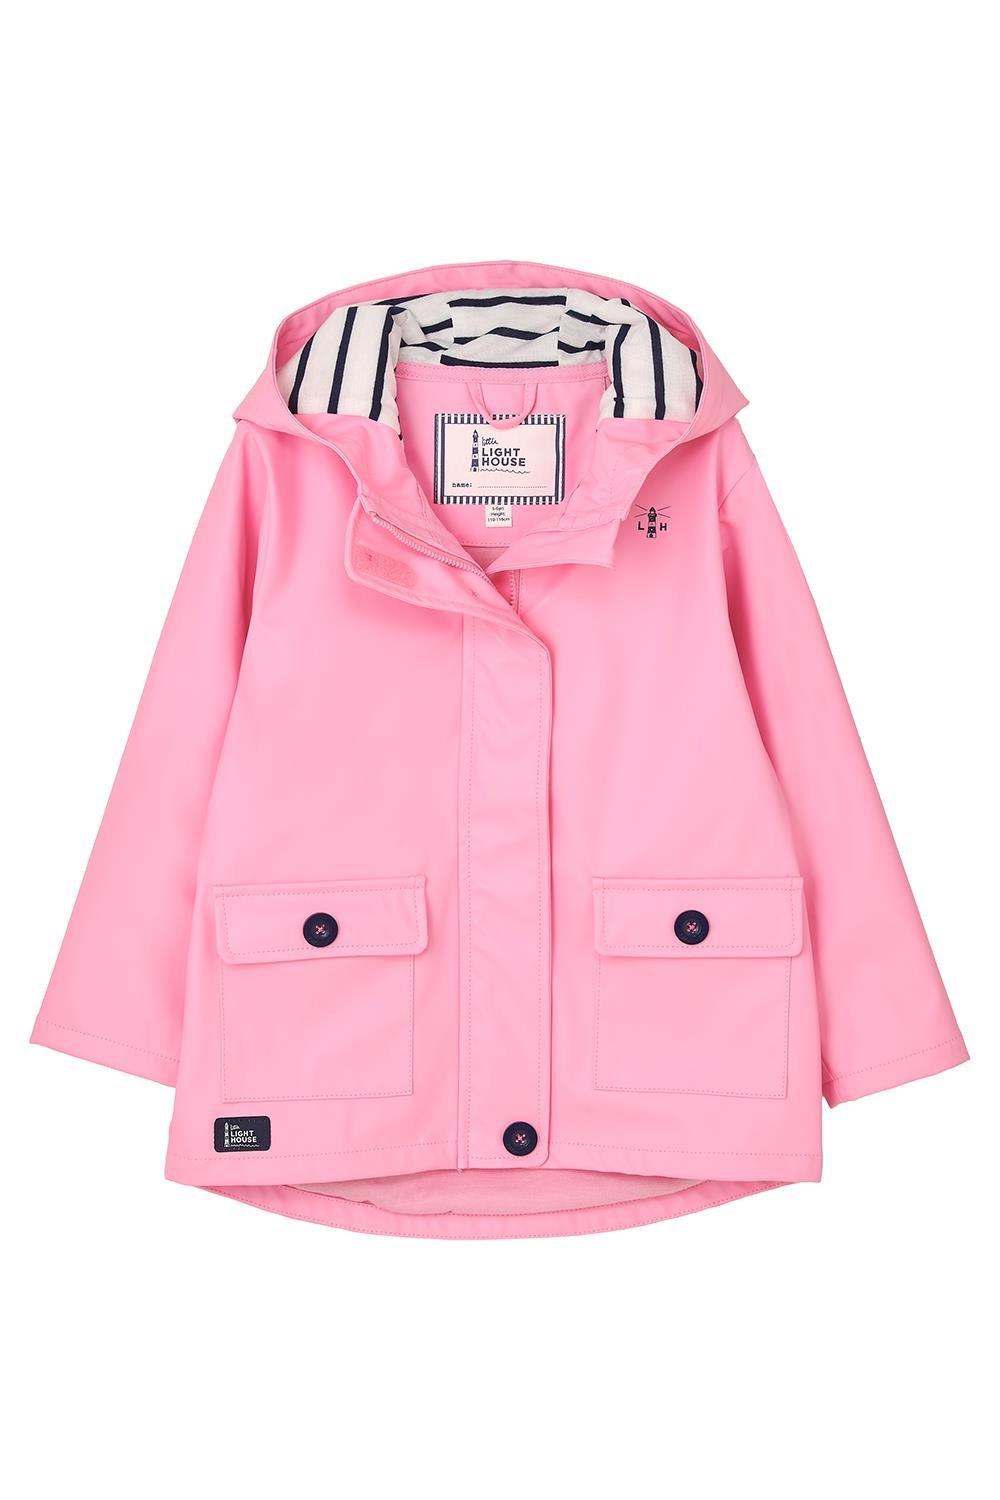 цена Прорезиненная водонепроницаемая куртка Heidi, плащ Lighthouse Clothing, розовый